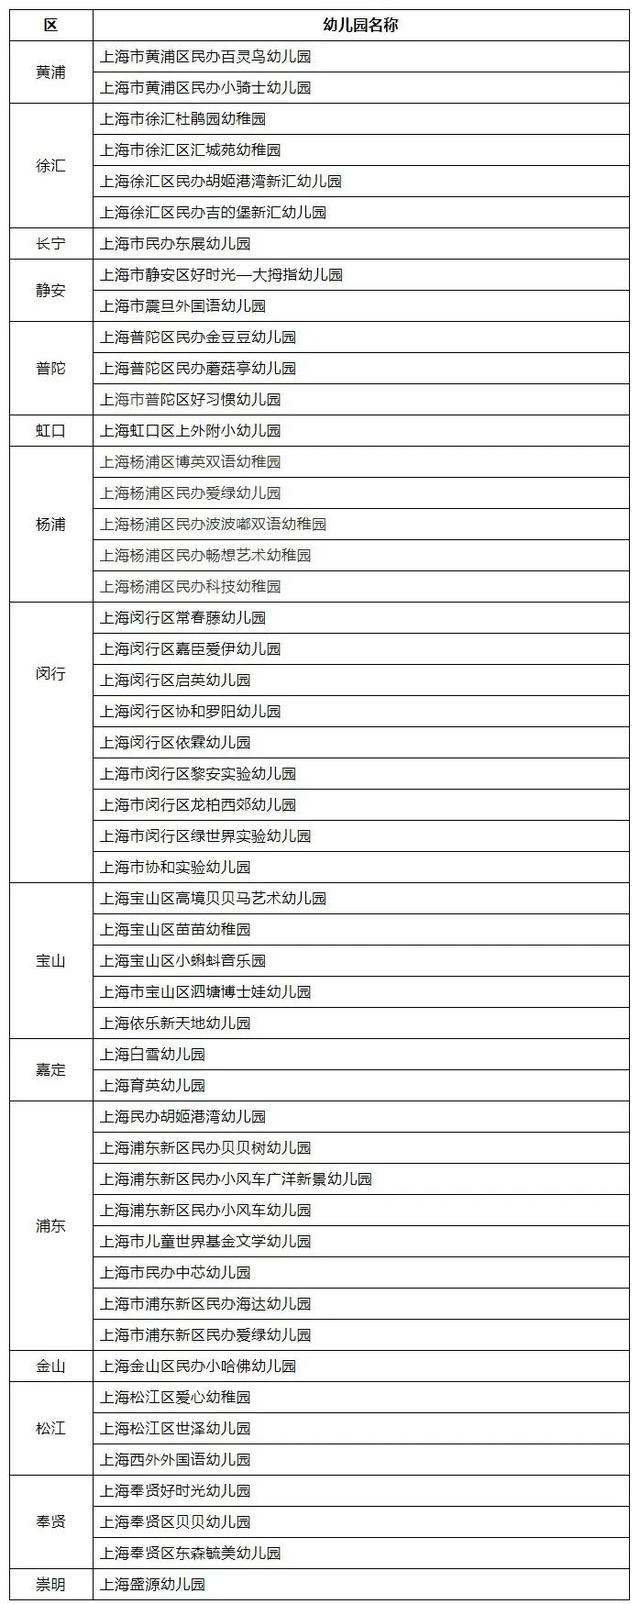 上海市第三轮民办优质幼儿园创建名单